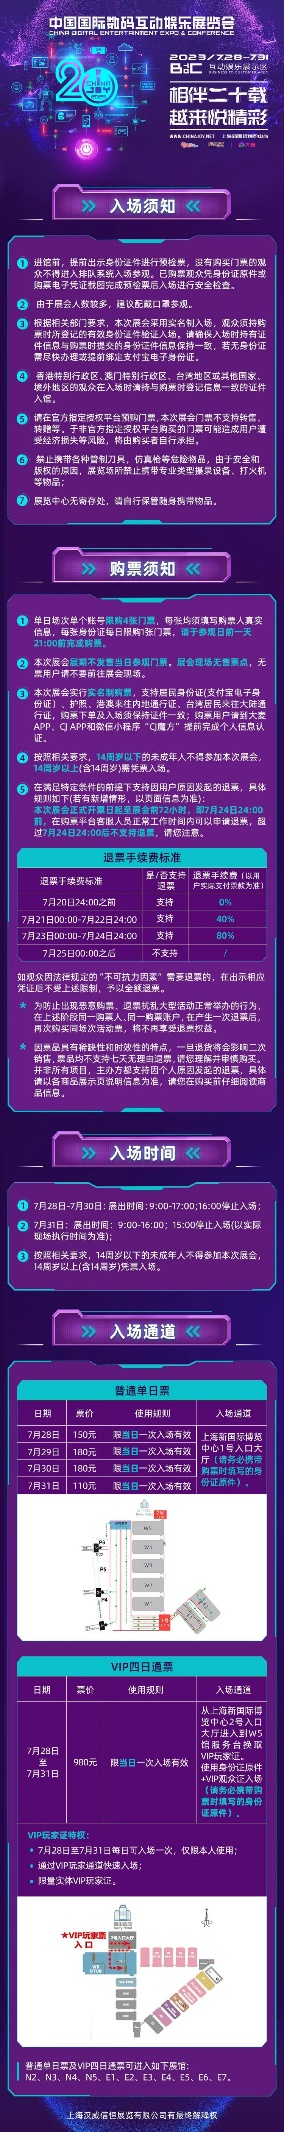 2023 ChinaJoy 抢票攻略（即刻收藏）！ 7月12日首批早鸟票限量发售、抢完即止！！！